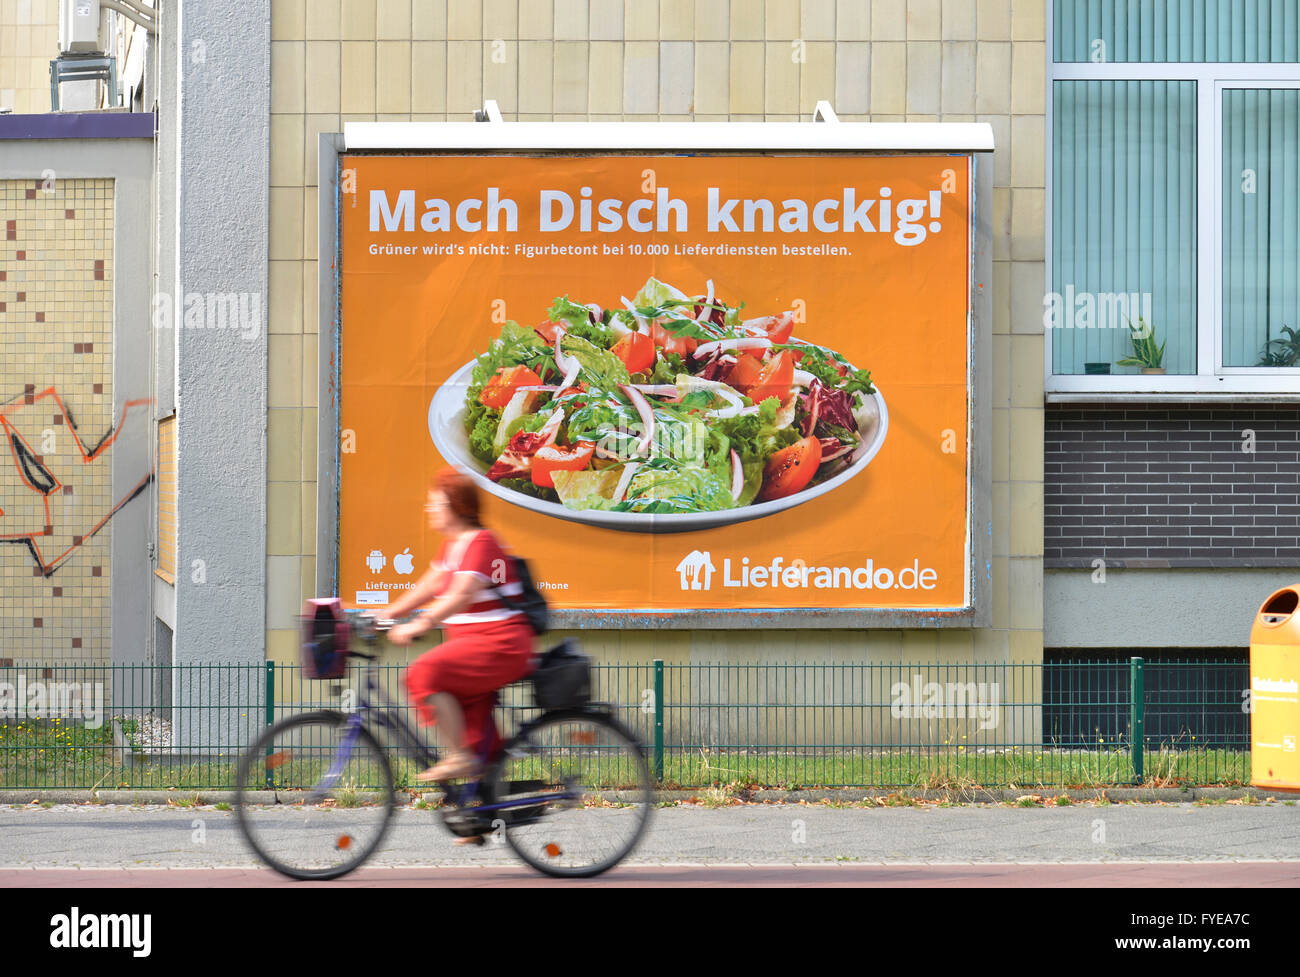 Plakat, Lieferando, Wilmersdorf, Berlin, Deutschland Stockfoto